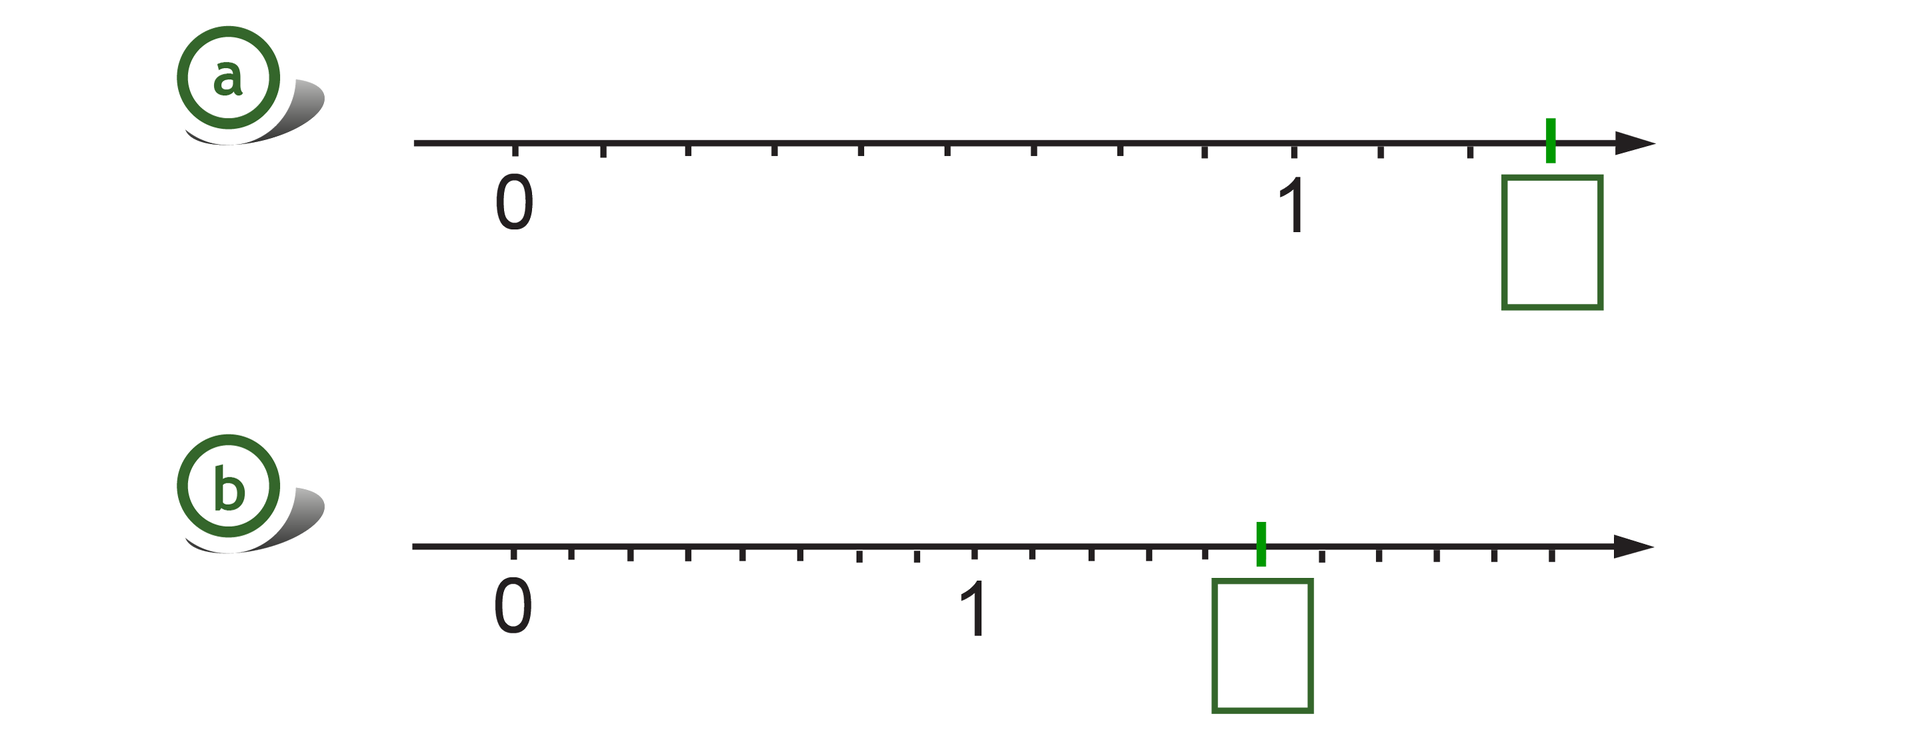 Rysunek dwóch osi liczbowych z zaznaczonymi punktami 0 i 1. Na pierwszej osi odcinek jednostkowy podzielony na 9 równych części, szukany punkt w wyznacza trzy części za punktem 1. Na drugiej osi odcinek jednostkowy podzielony na 8 równych części, szukany punkt w wyznacza 5 części za punktem 1.